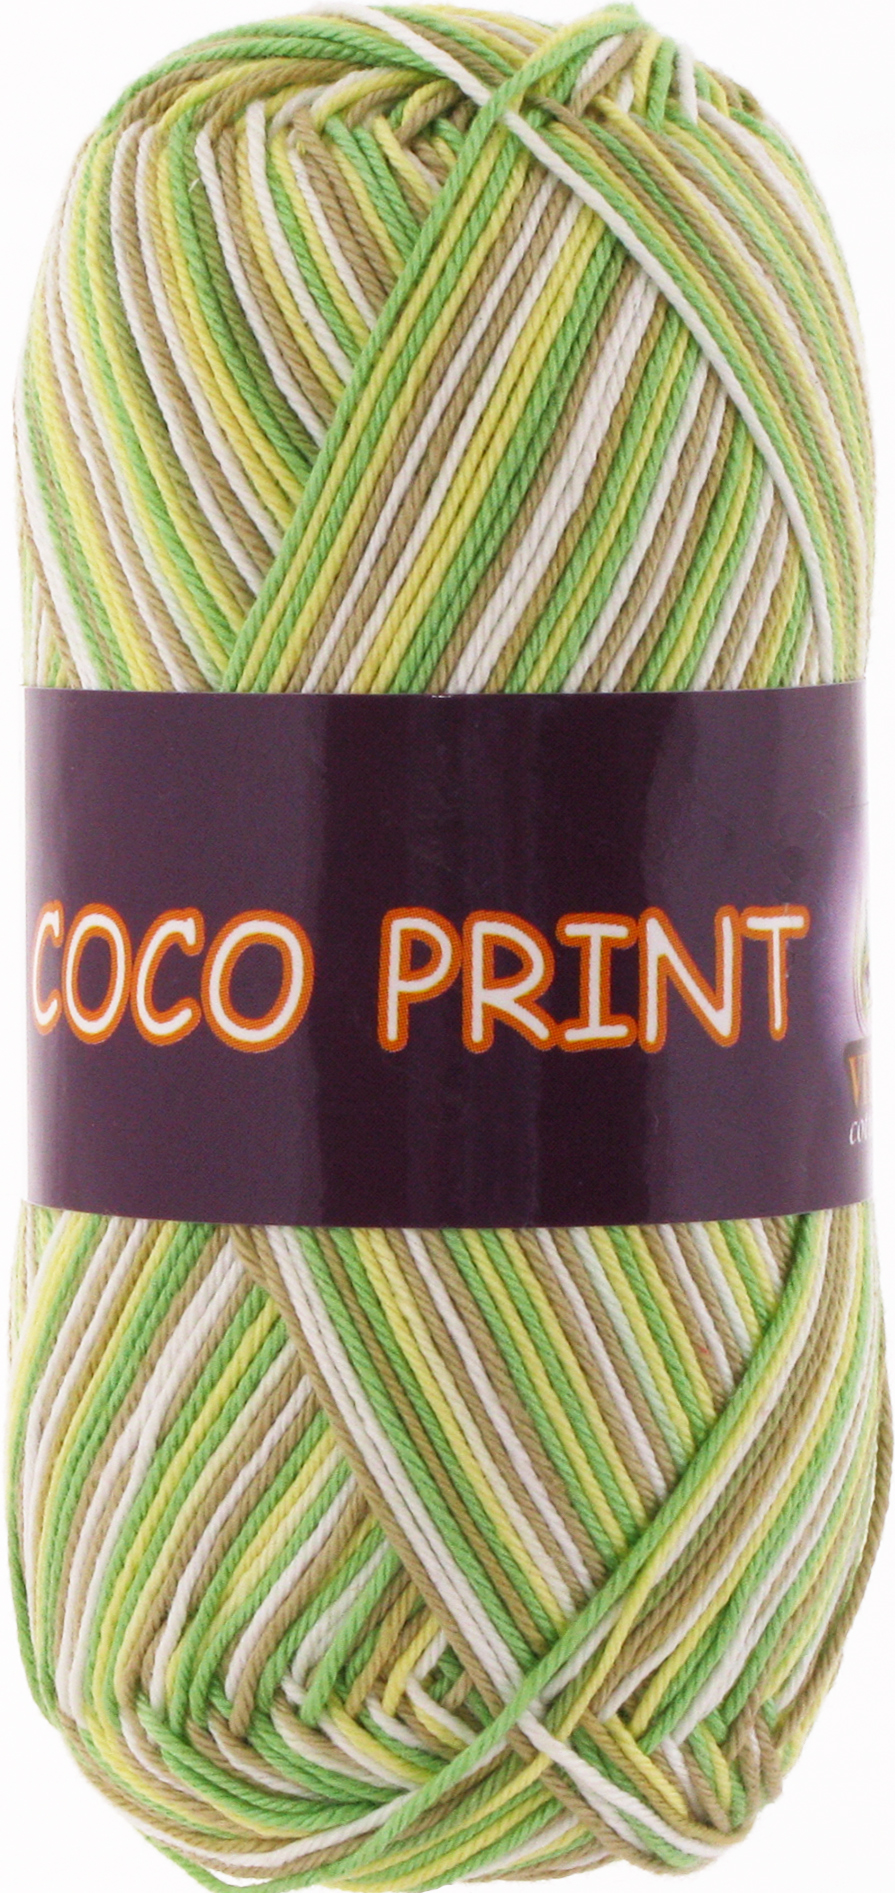 Coco print 4671 желто-зеленый